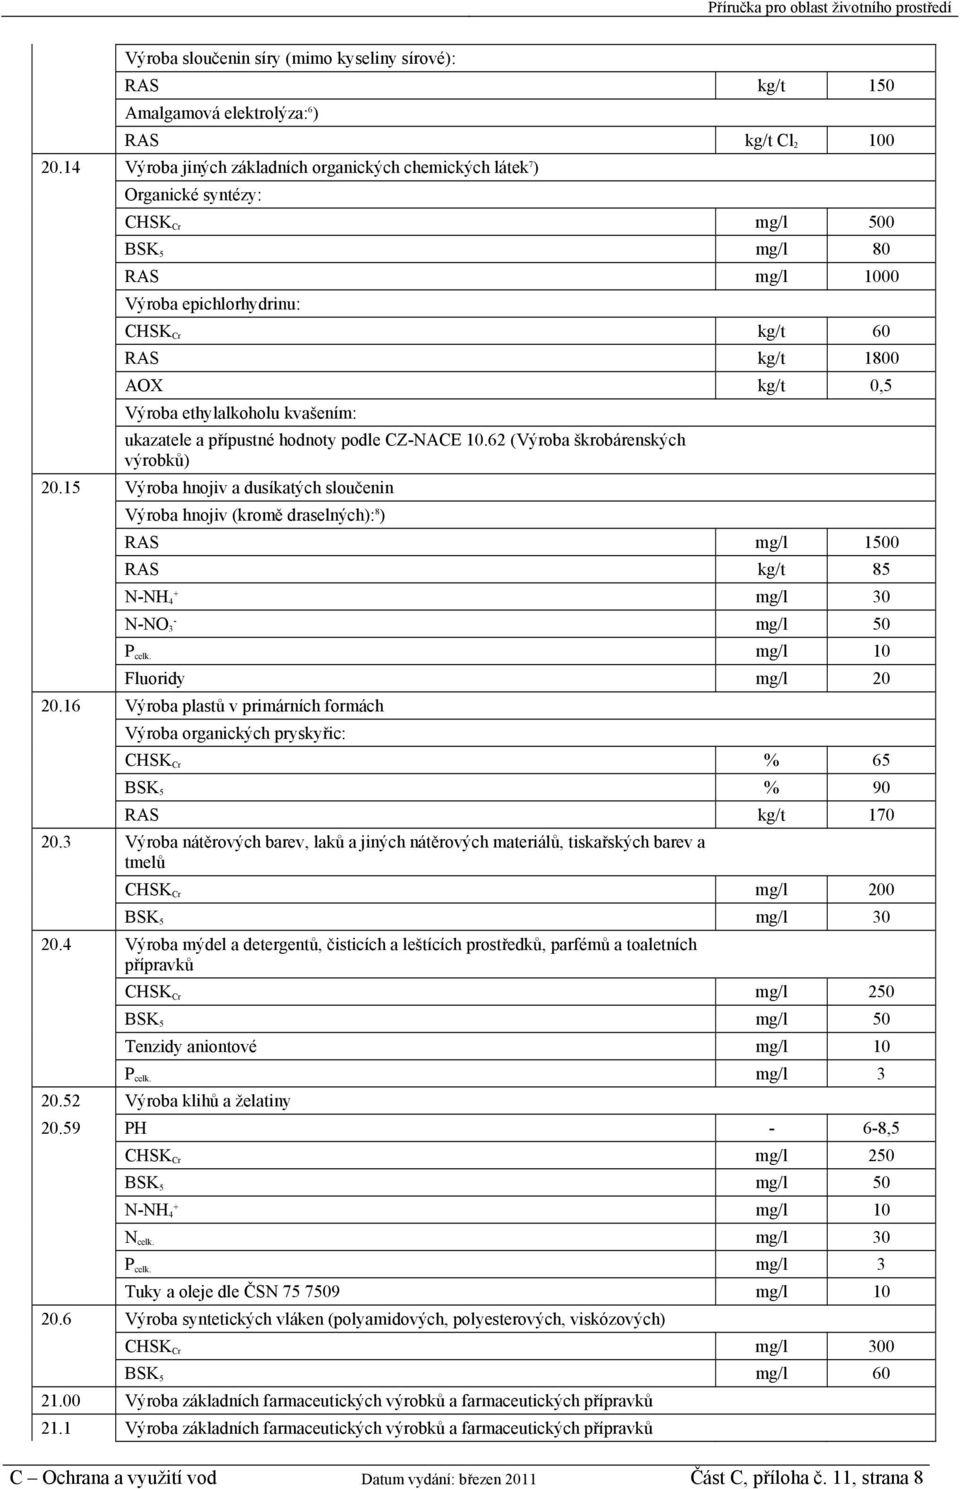 ethylalkoholu kvašením: ukazatele a přípustné hodnoty podle CZ-NACE 10.62 (Výroba škrobárenských výrobků) 20.